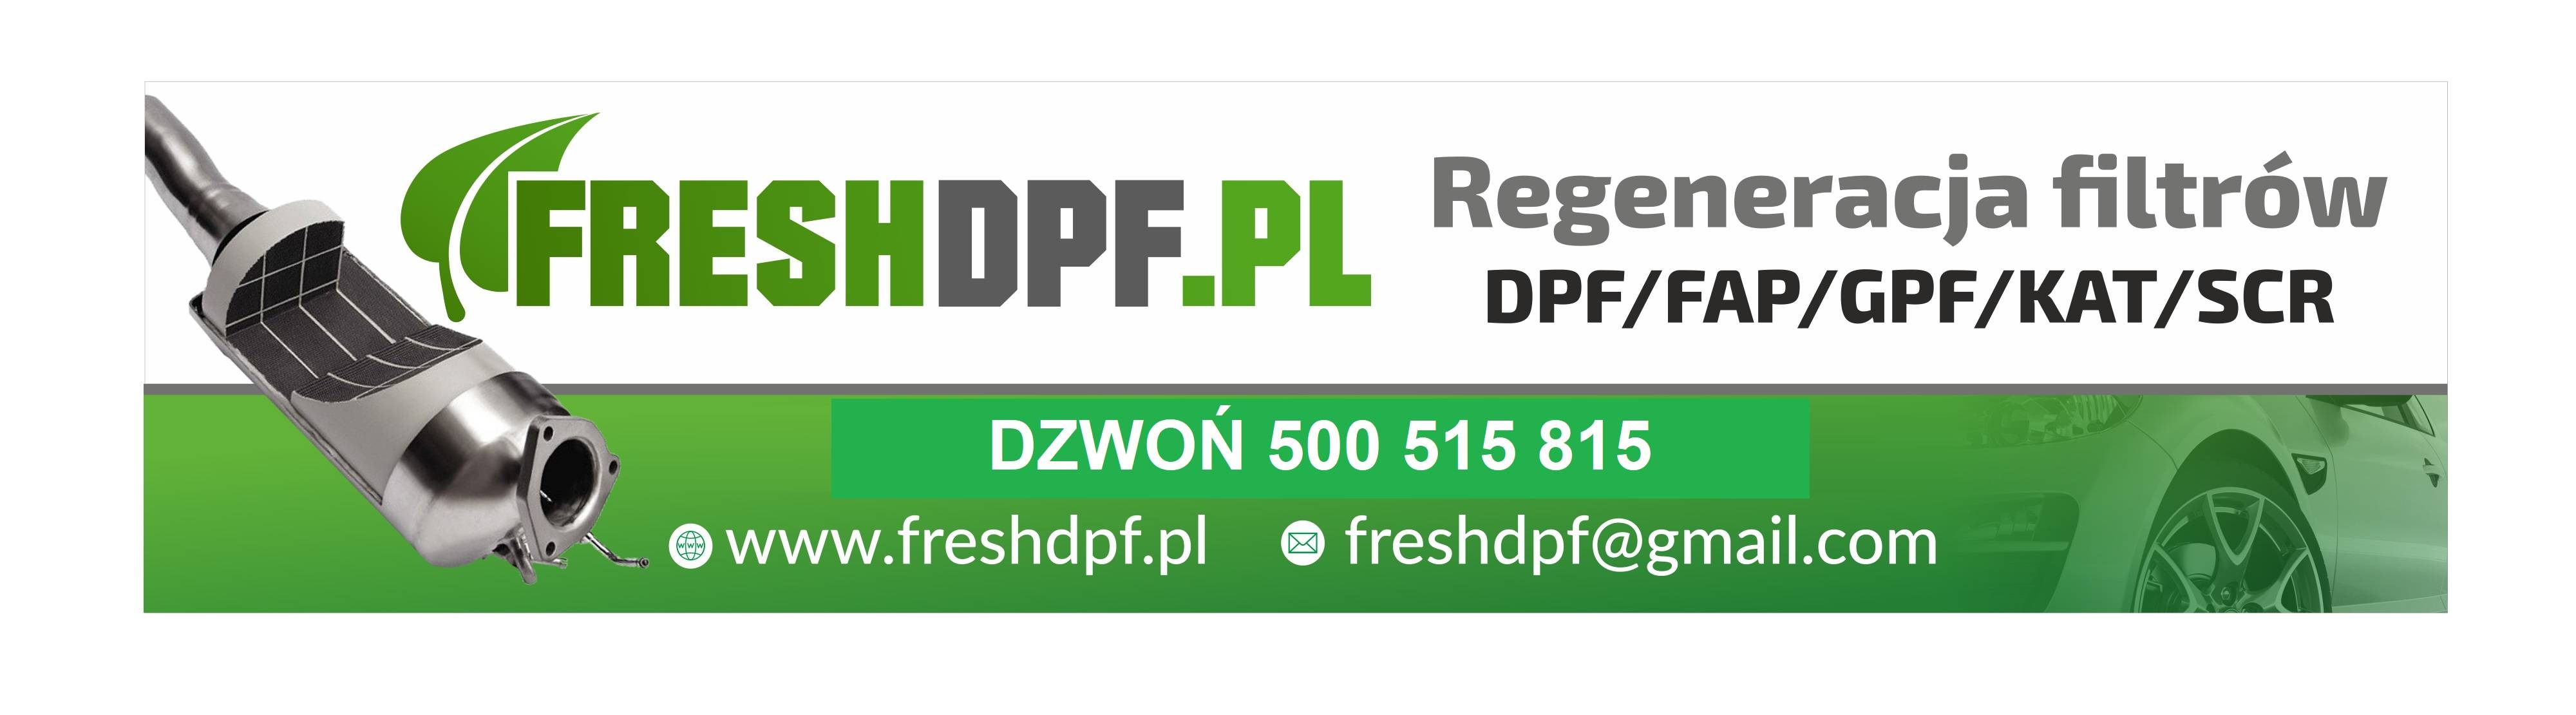 FreshDPF.pl Regeneracja filtrów DPF